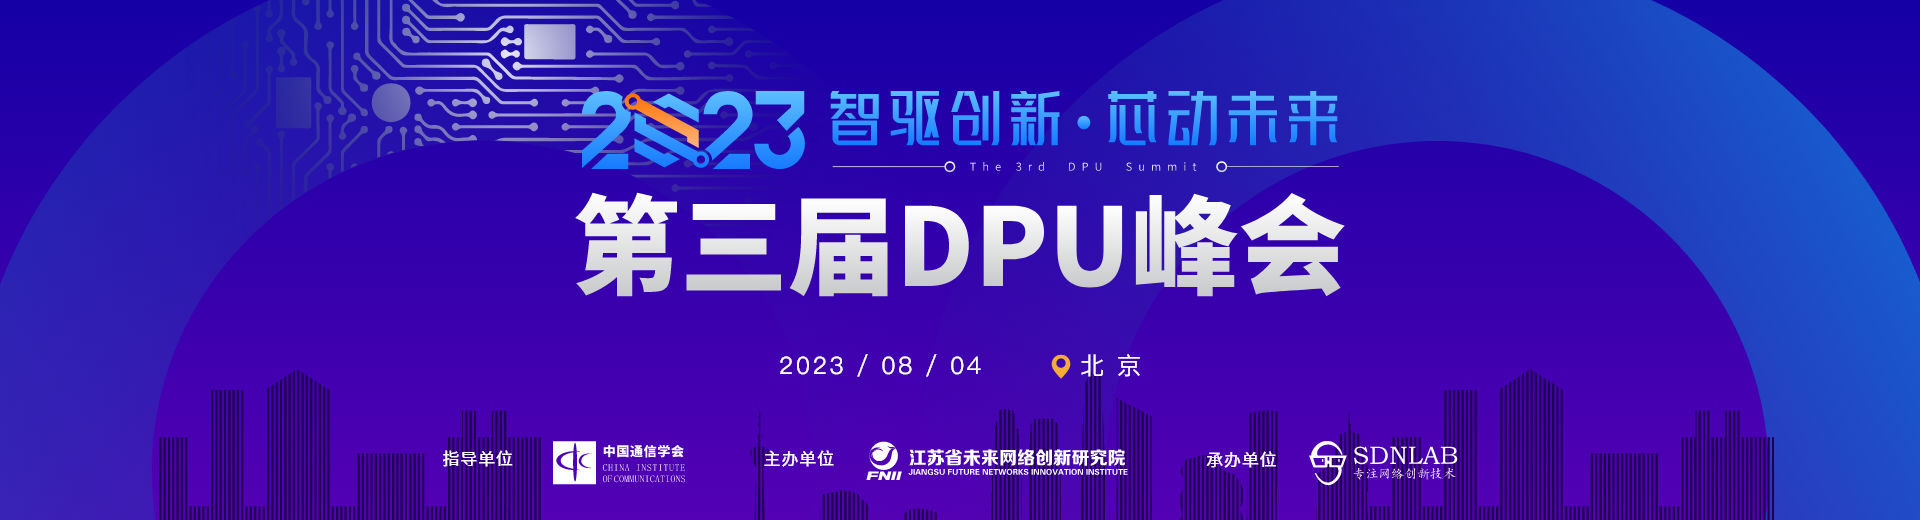 2023第三届DPU峰会